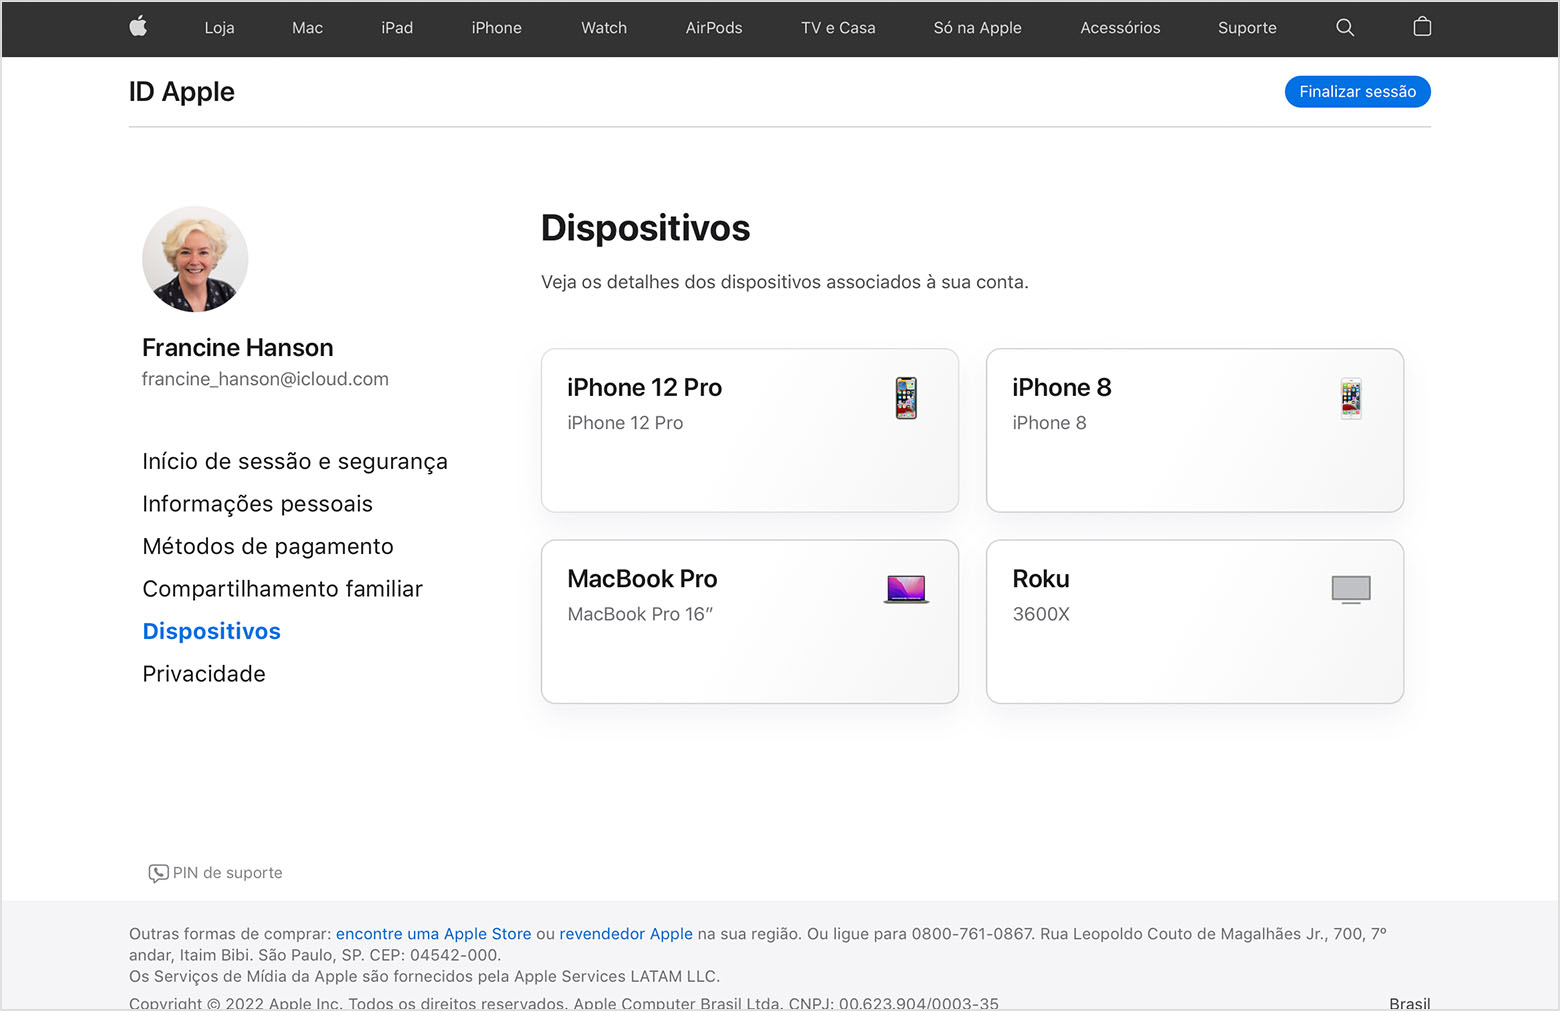 Uma imagem de appleid.apple.com mostrando três dispositivos para Francine Hanson: um iPhone 12 Pro, um MacBook Pro e um Roku.